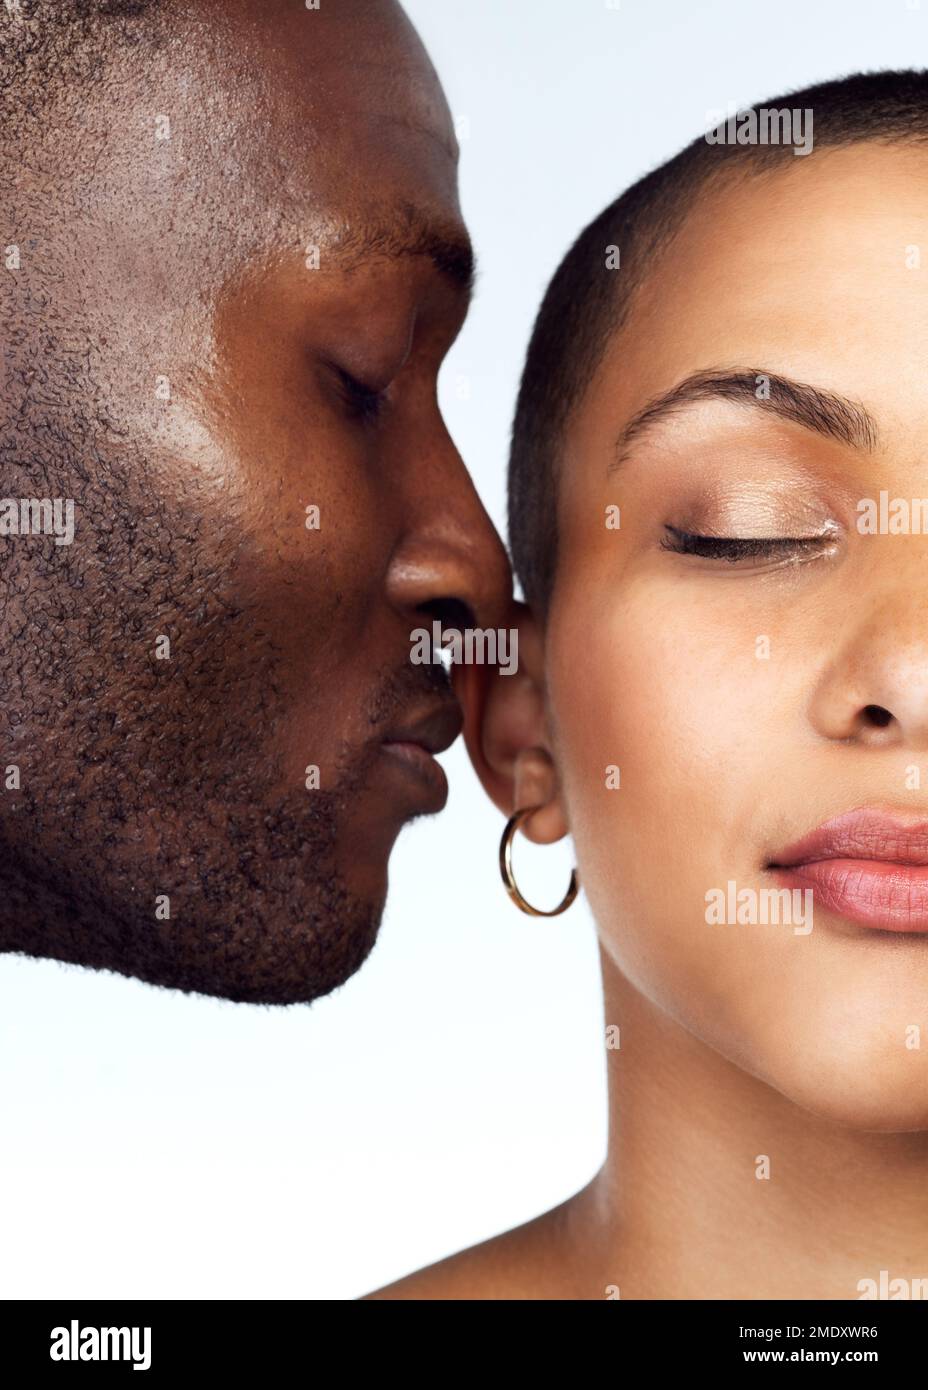 Le parfum de l'amour persiste tout autour de nous. Photo en studio d'un couple posant avec leurs yeux fermés sur un fond gris. Banque D'Images